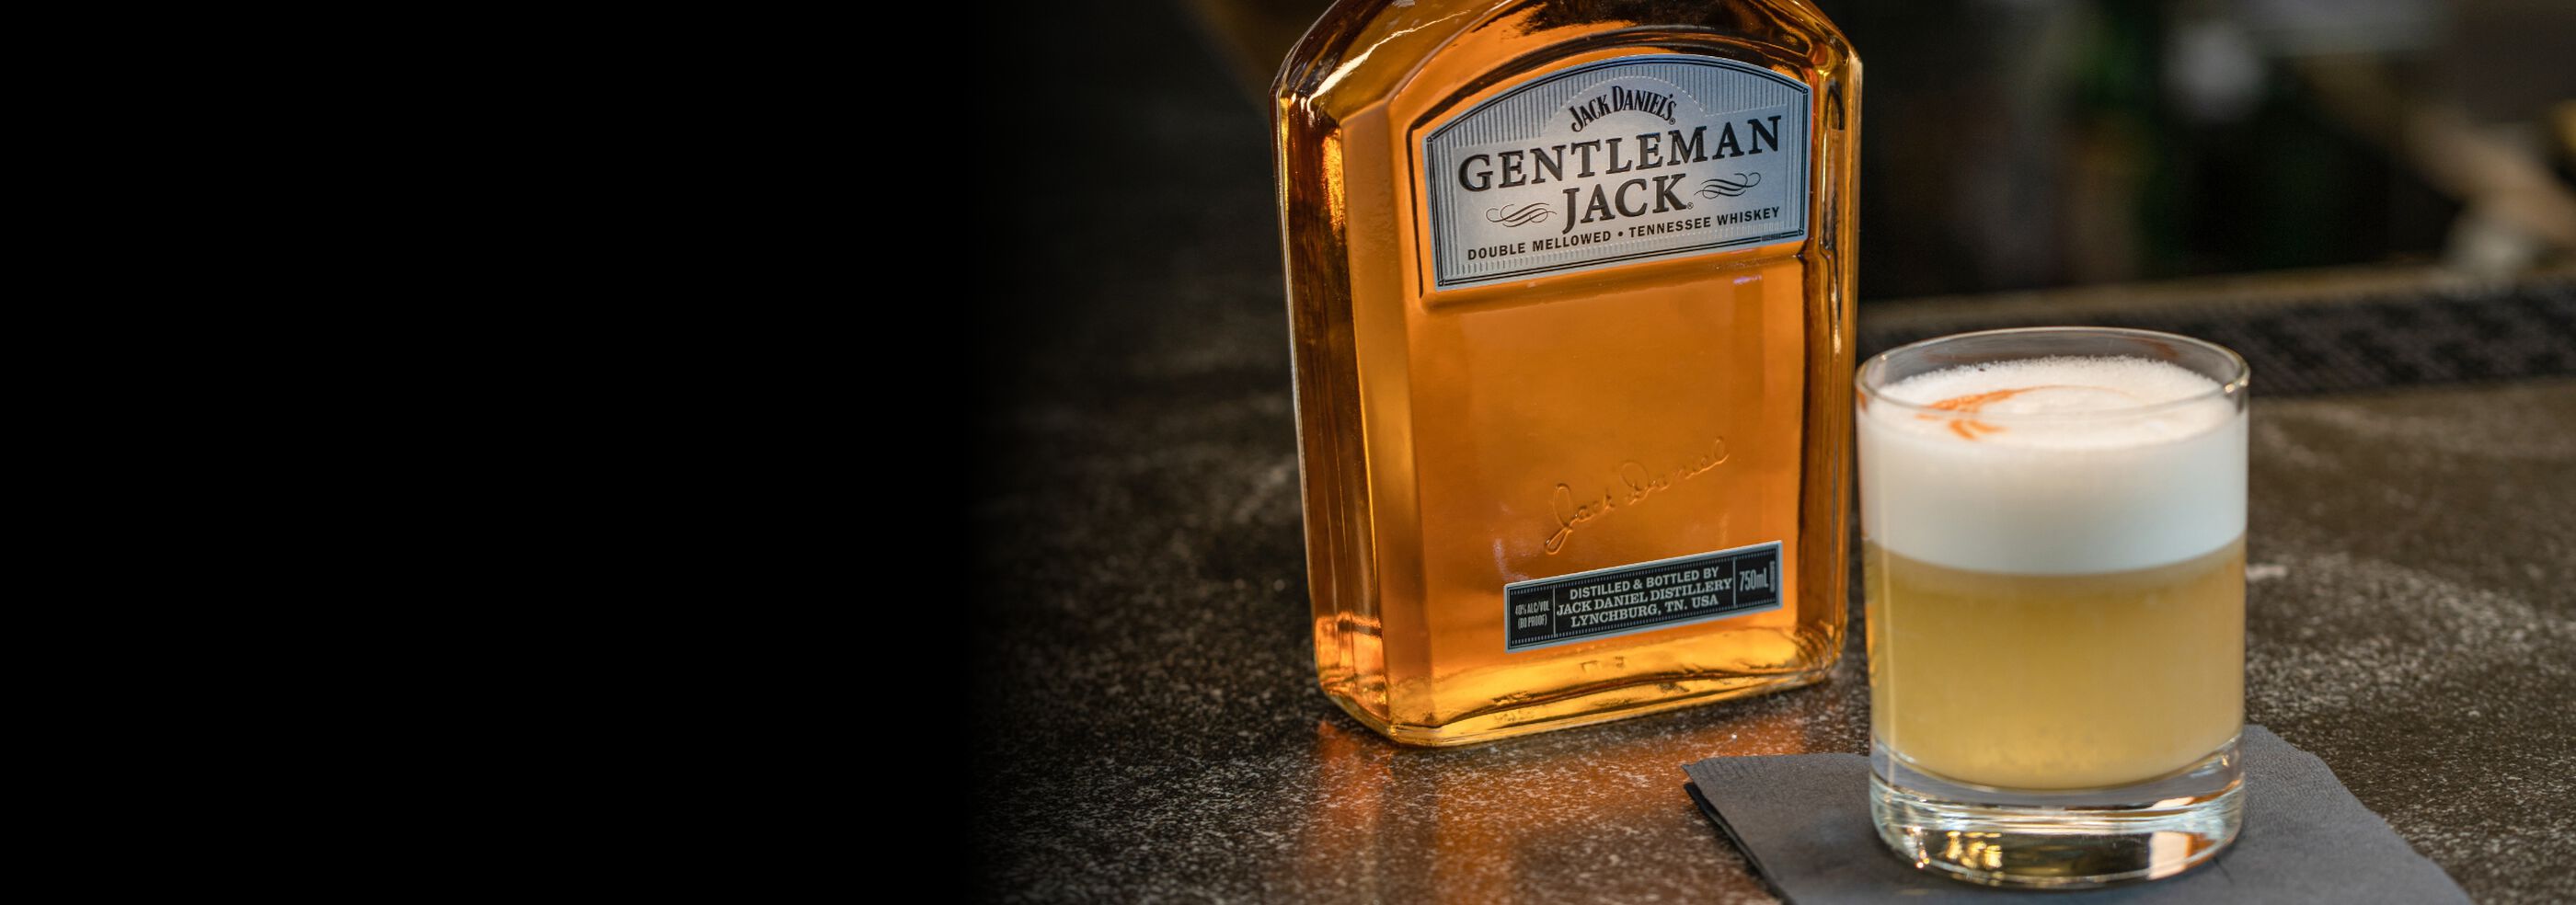  Jack Daniel's Gentleman Jack Sour